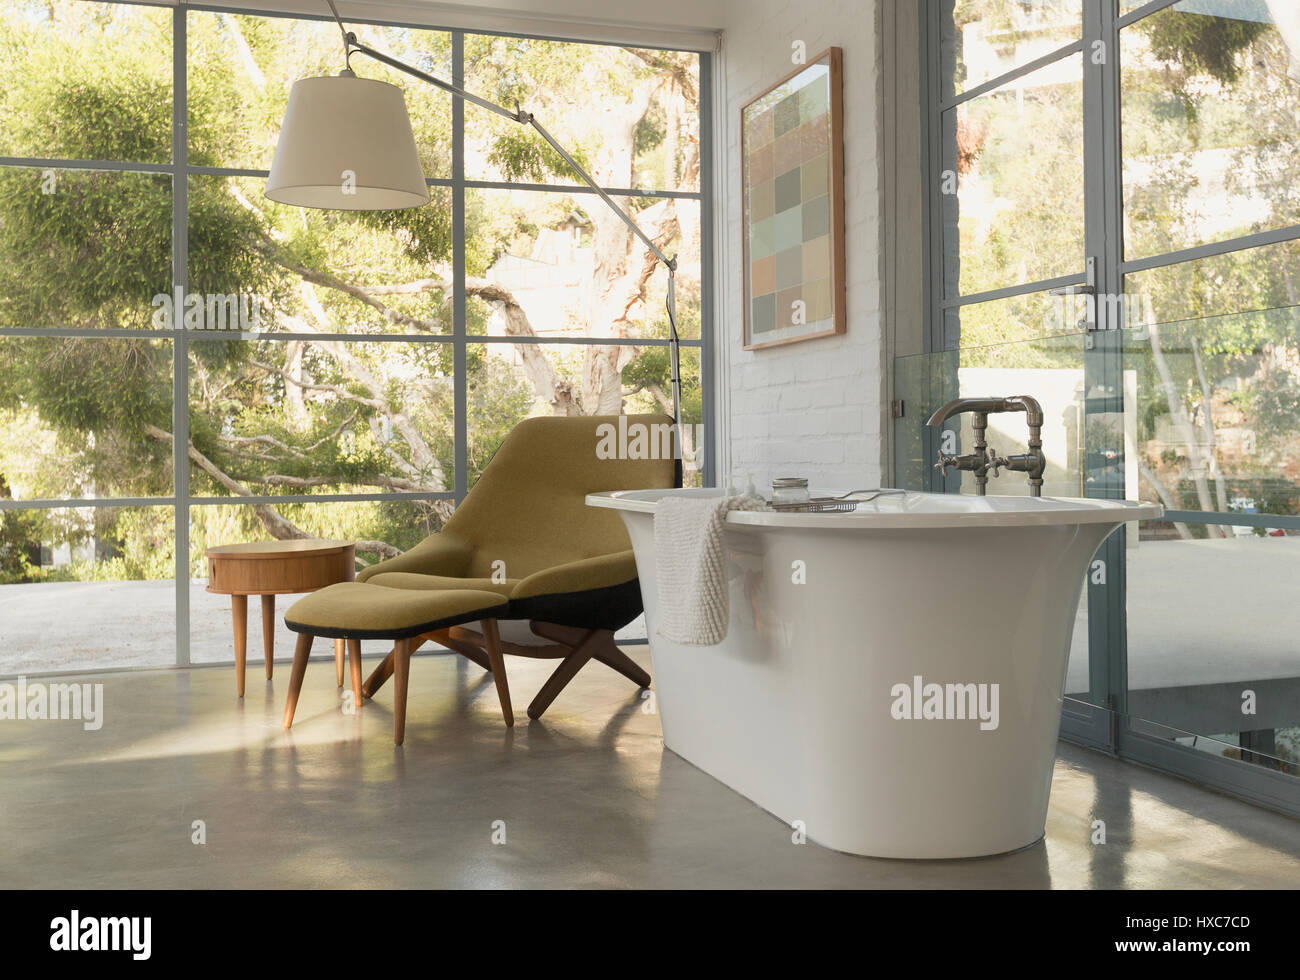 Badewanne im Hause Schaukasten innen Schlafzimmer mit Blick auf den Garten Stockfoto